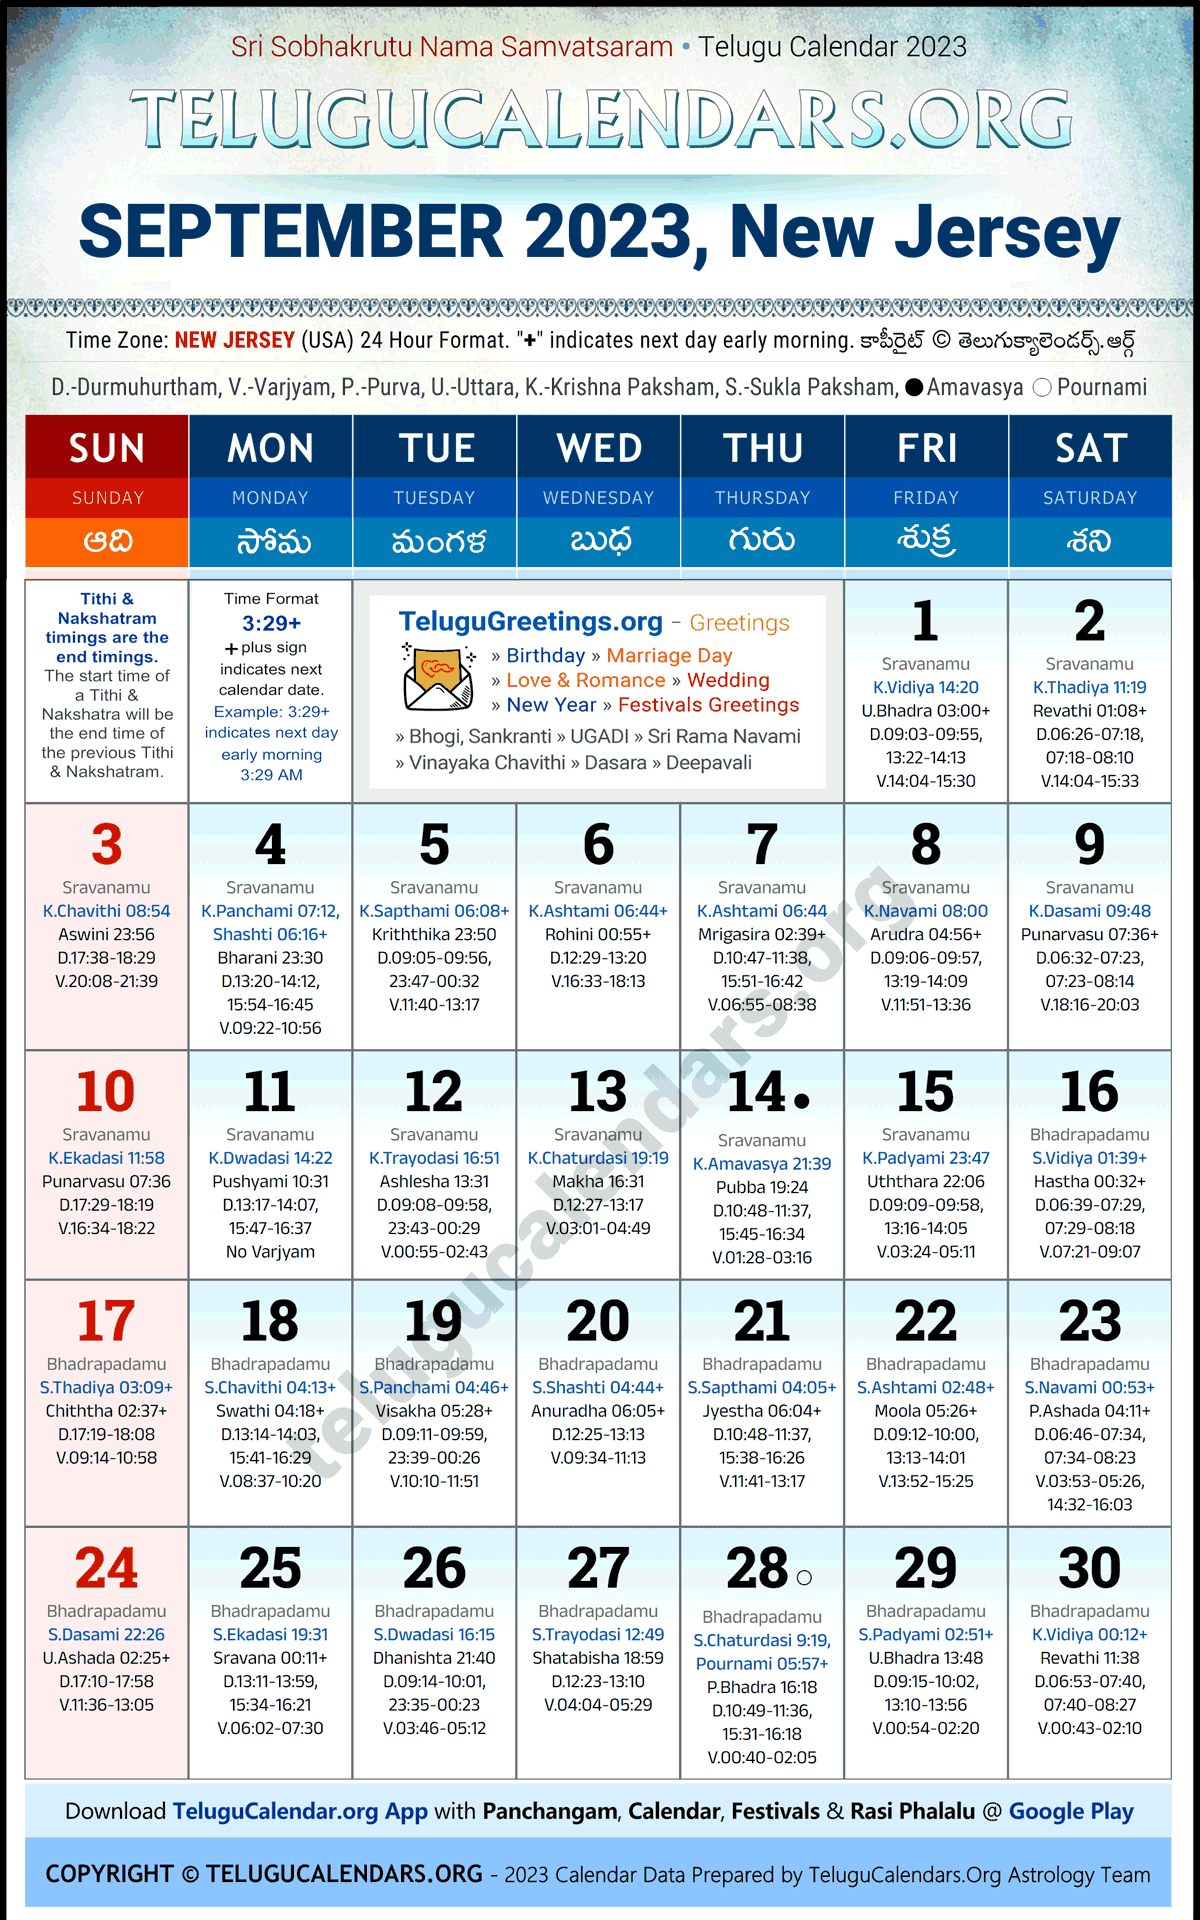 Telugu Calendar 2023 September Festivals for New Jersey